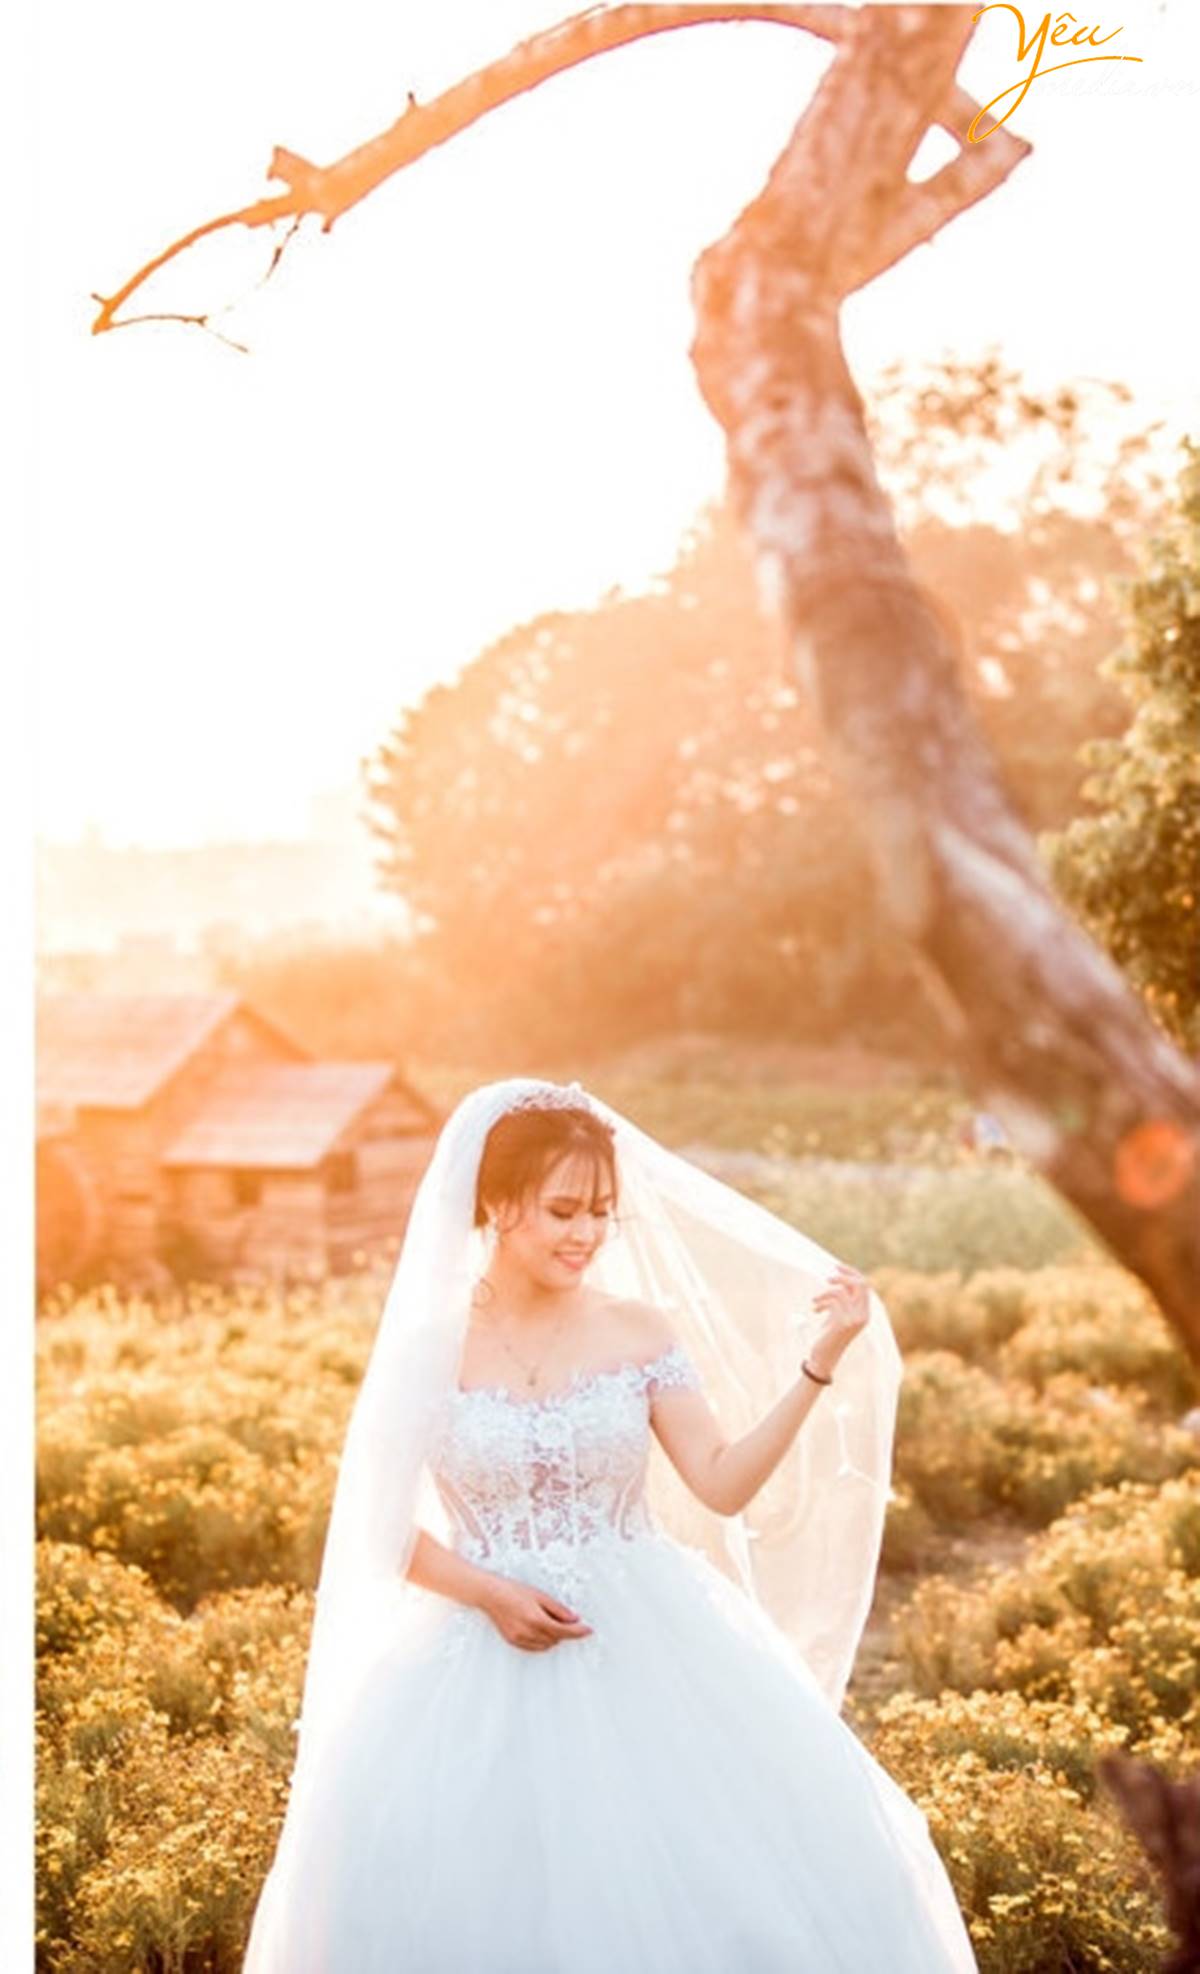 chụp ảnh cưới tại Thảo nguyên hoa Long Biên